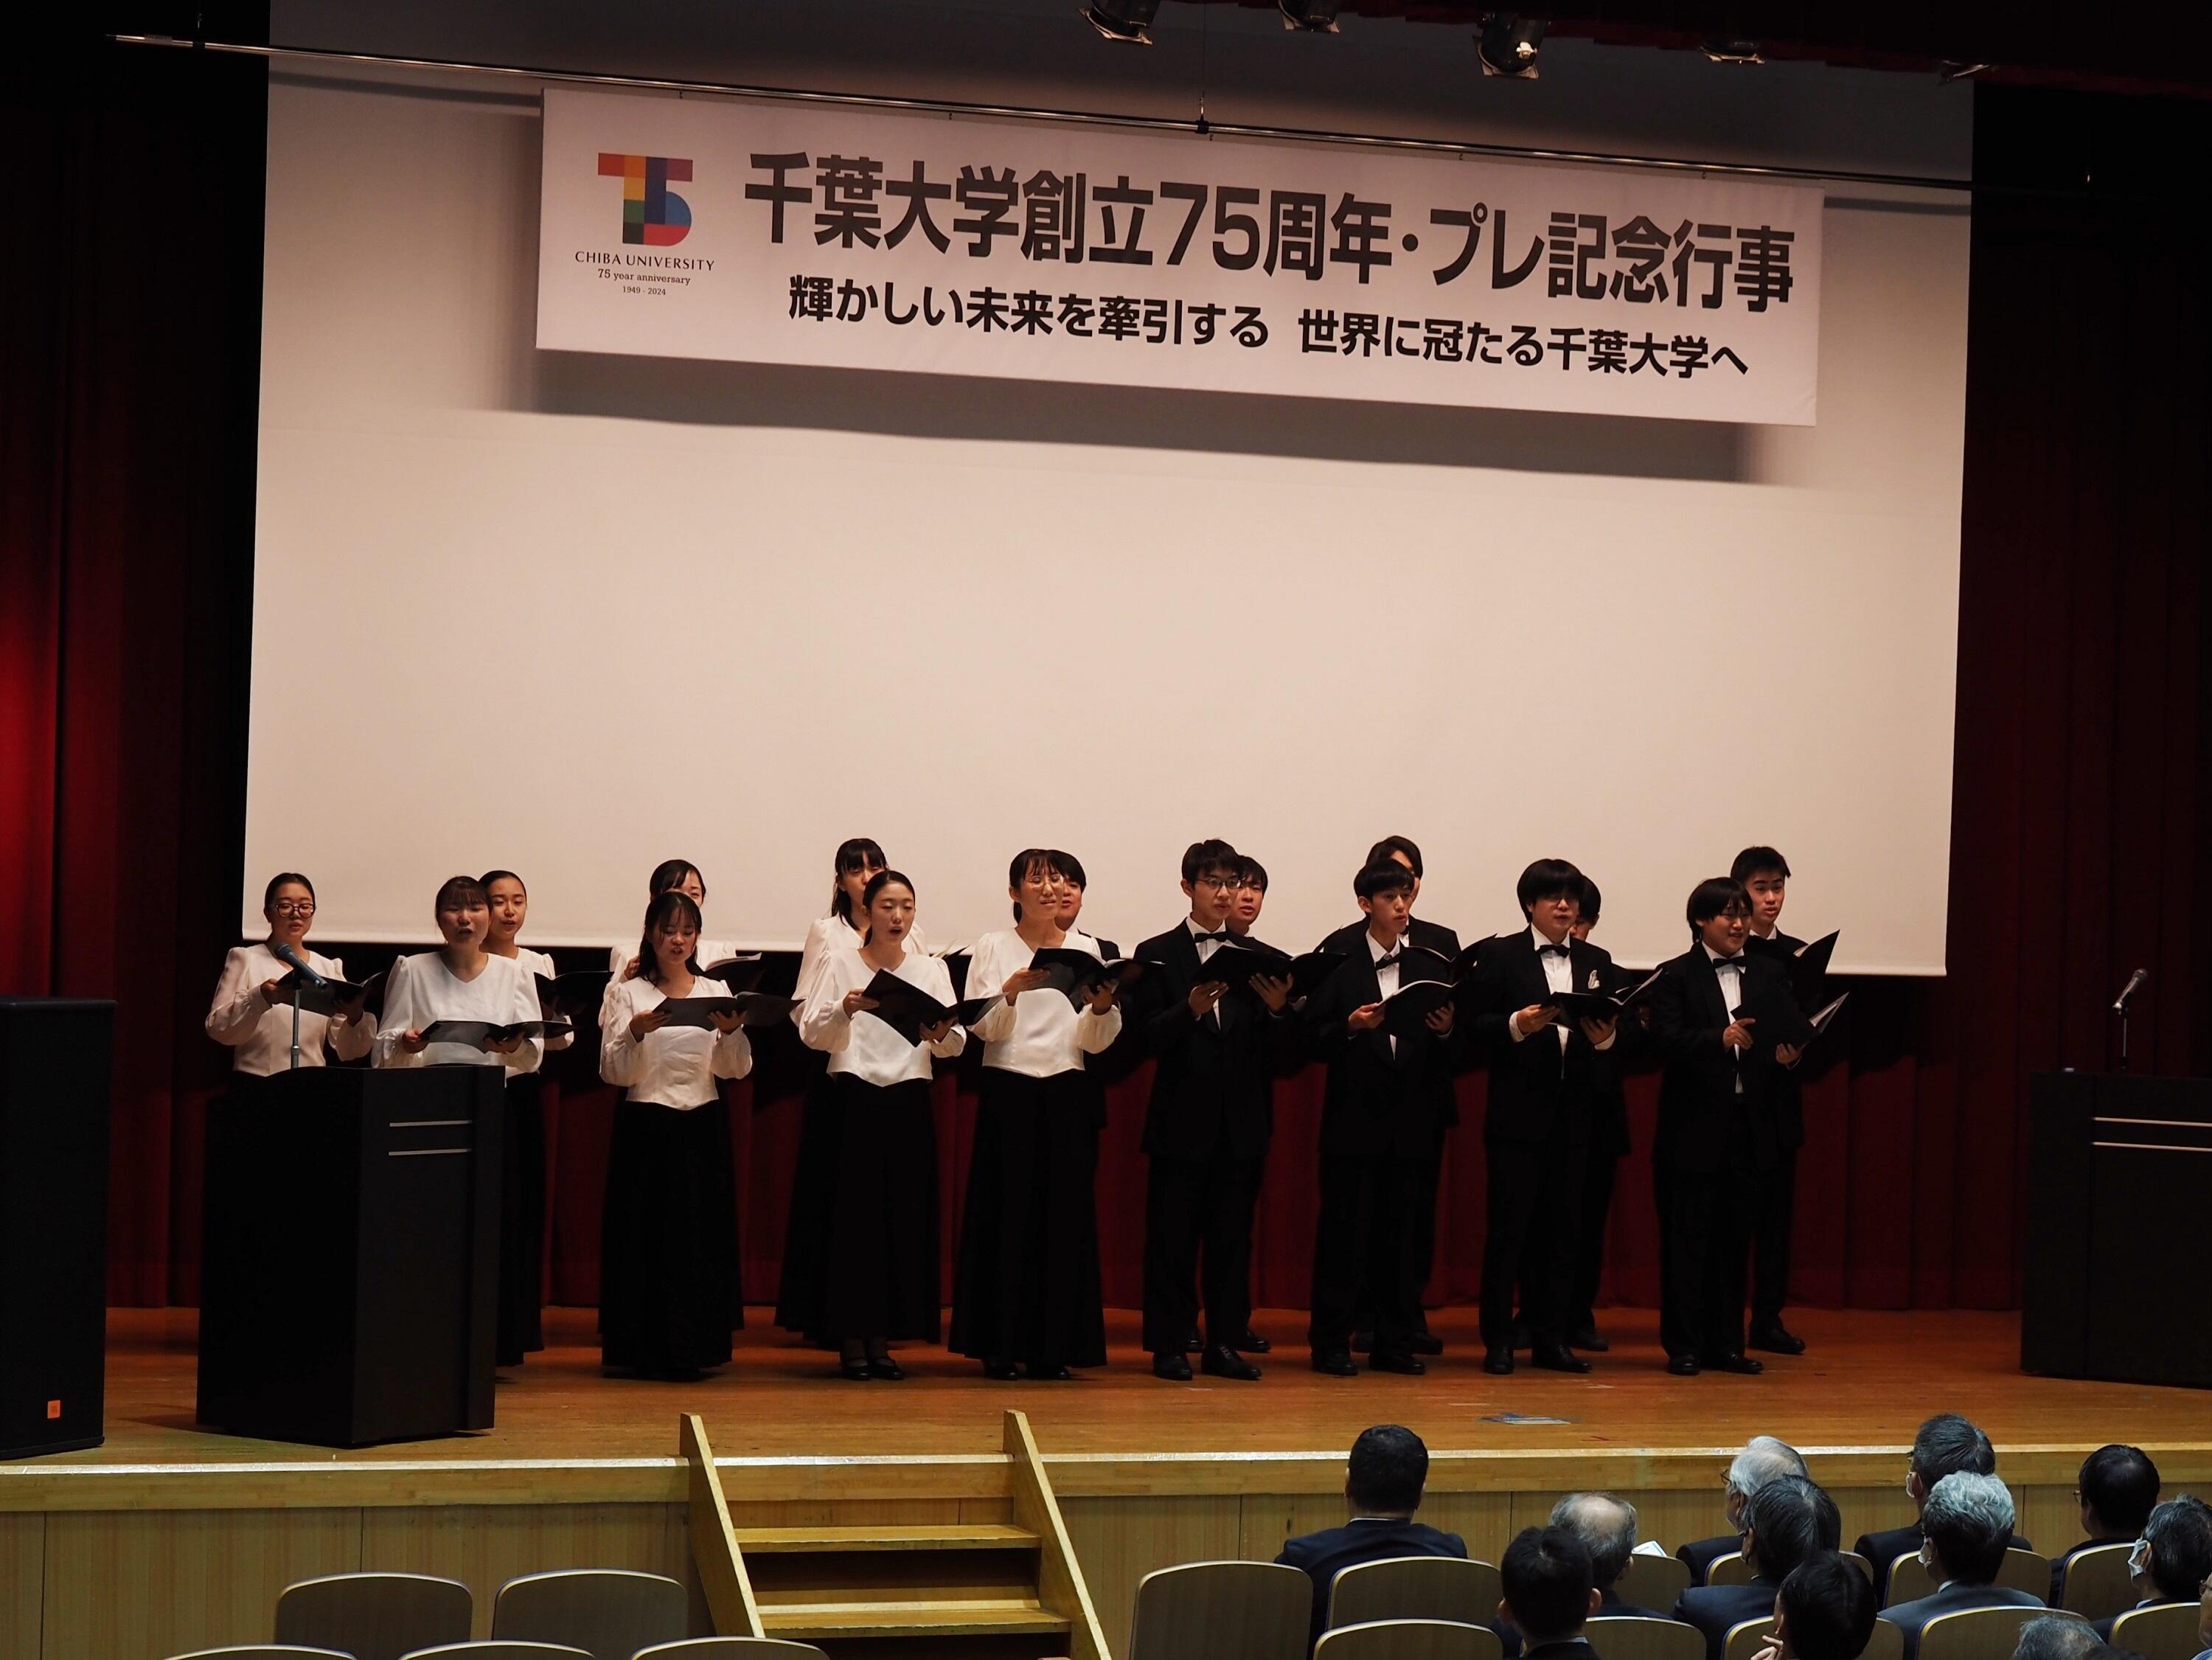 千葉大学合唱団による学歌斉唱の様子